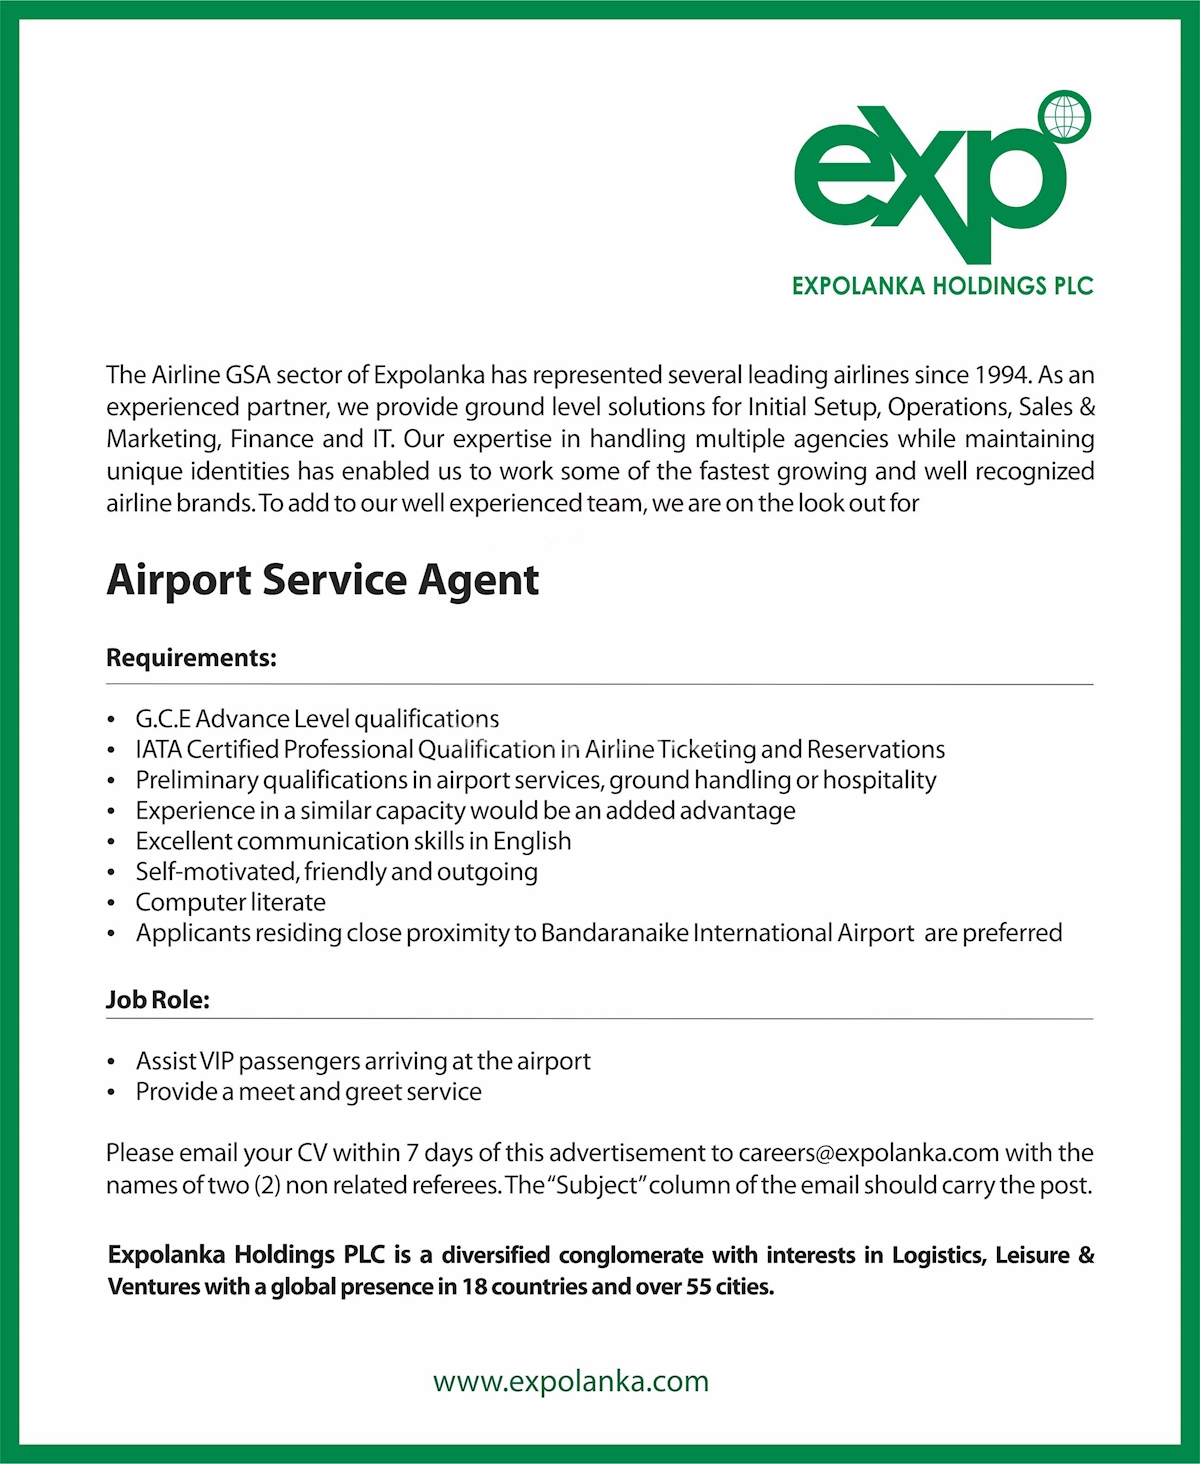 Airport handling agent job description